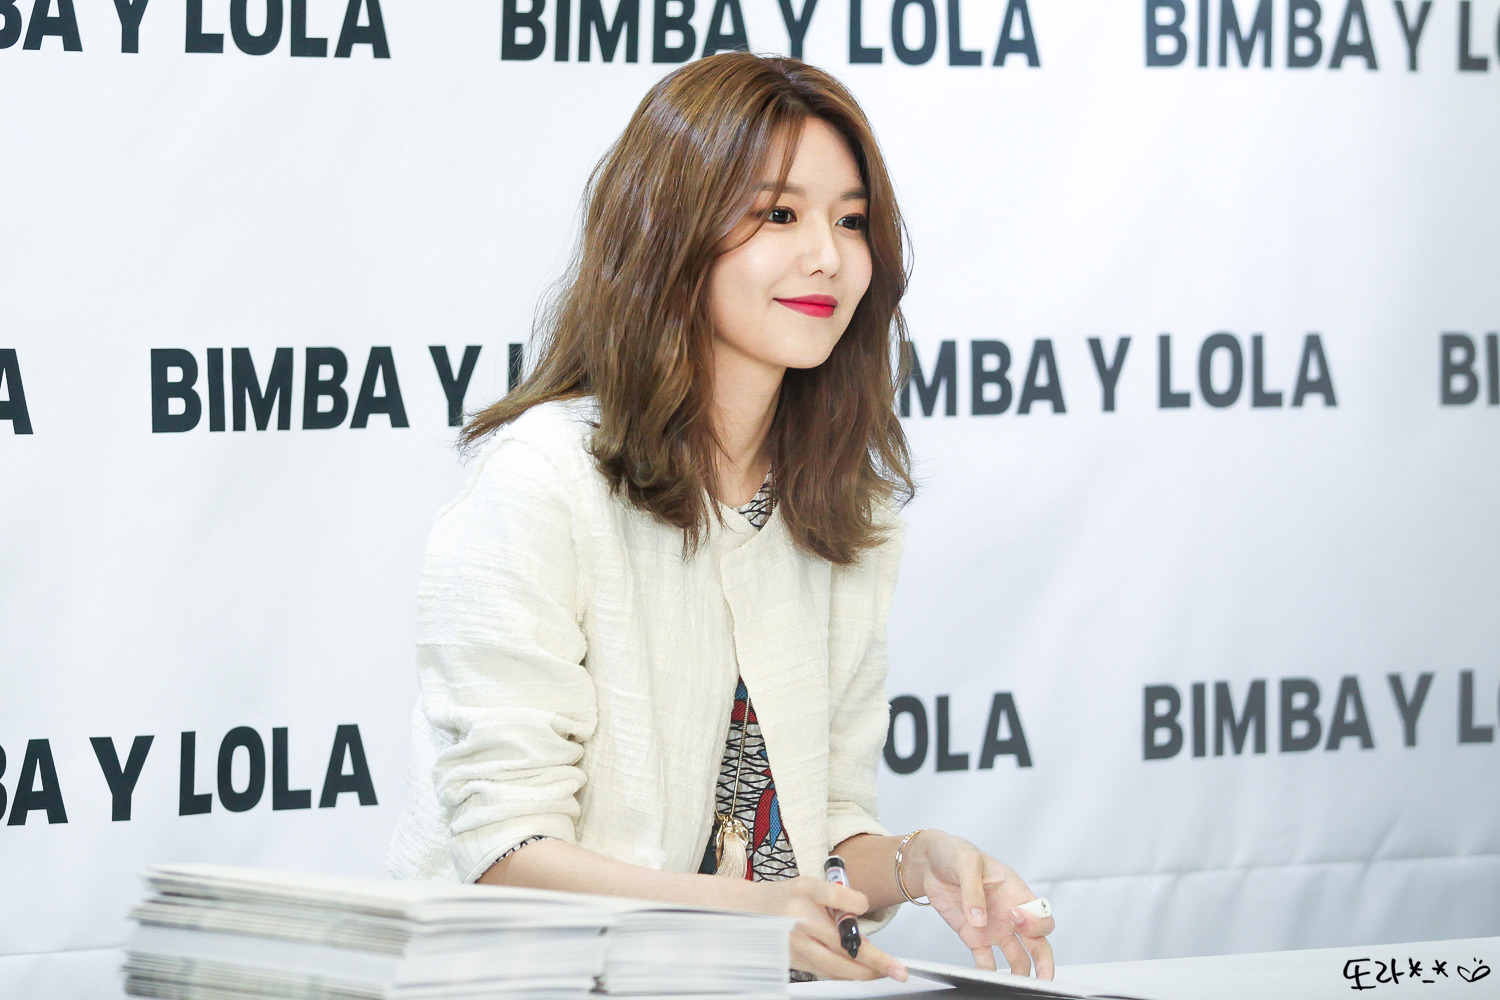 [PIC][10-03-2017]SooYoung tham dự buổi Fansign cho dòng thời trang "BIMBA Y LOLA" tại Lotte Department Store vào chiều nay - Page 2 21330642590C73E119DDB2